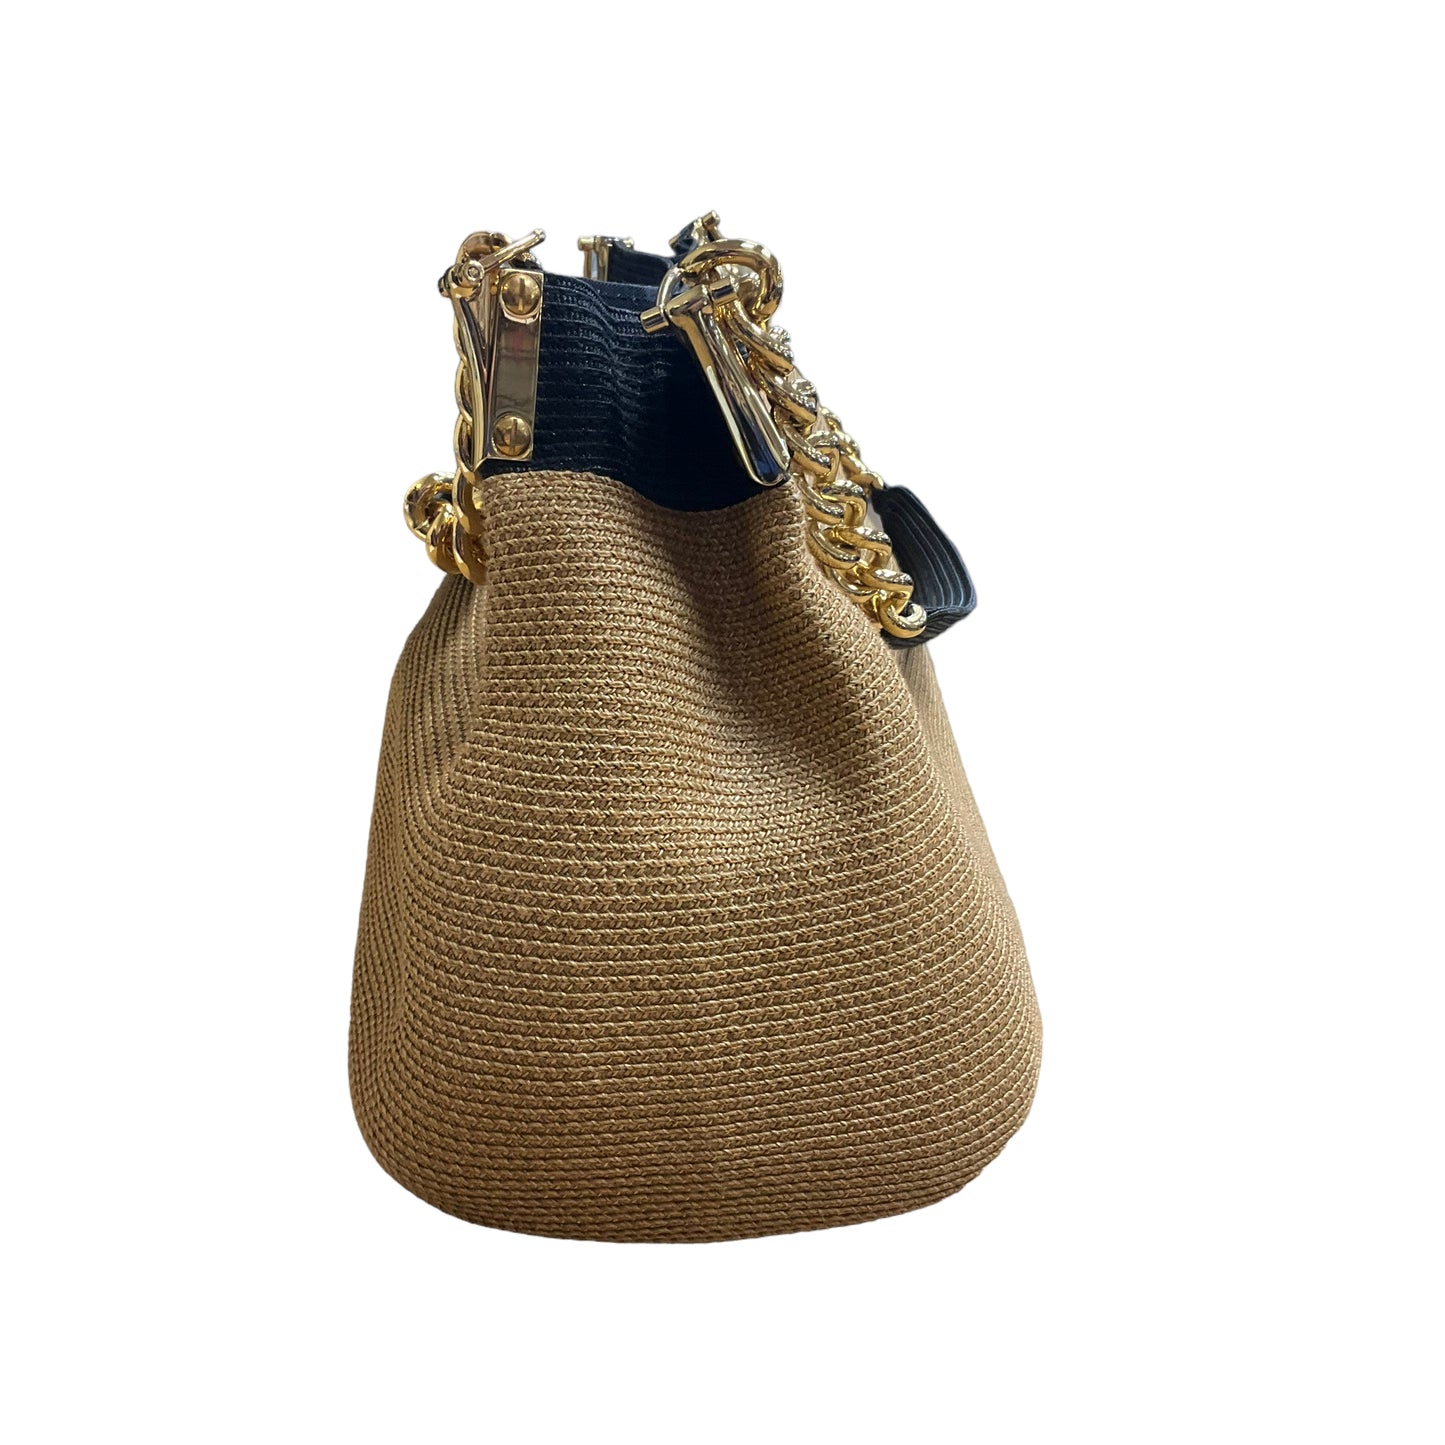 Handbag Designer By Eric Javitz  Size: Large